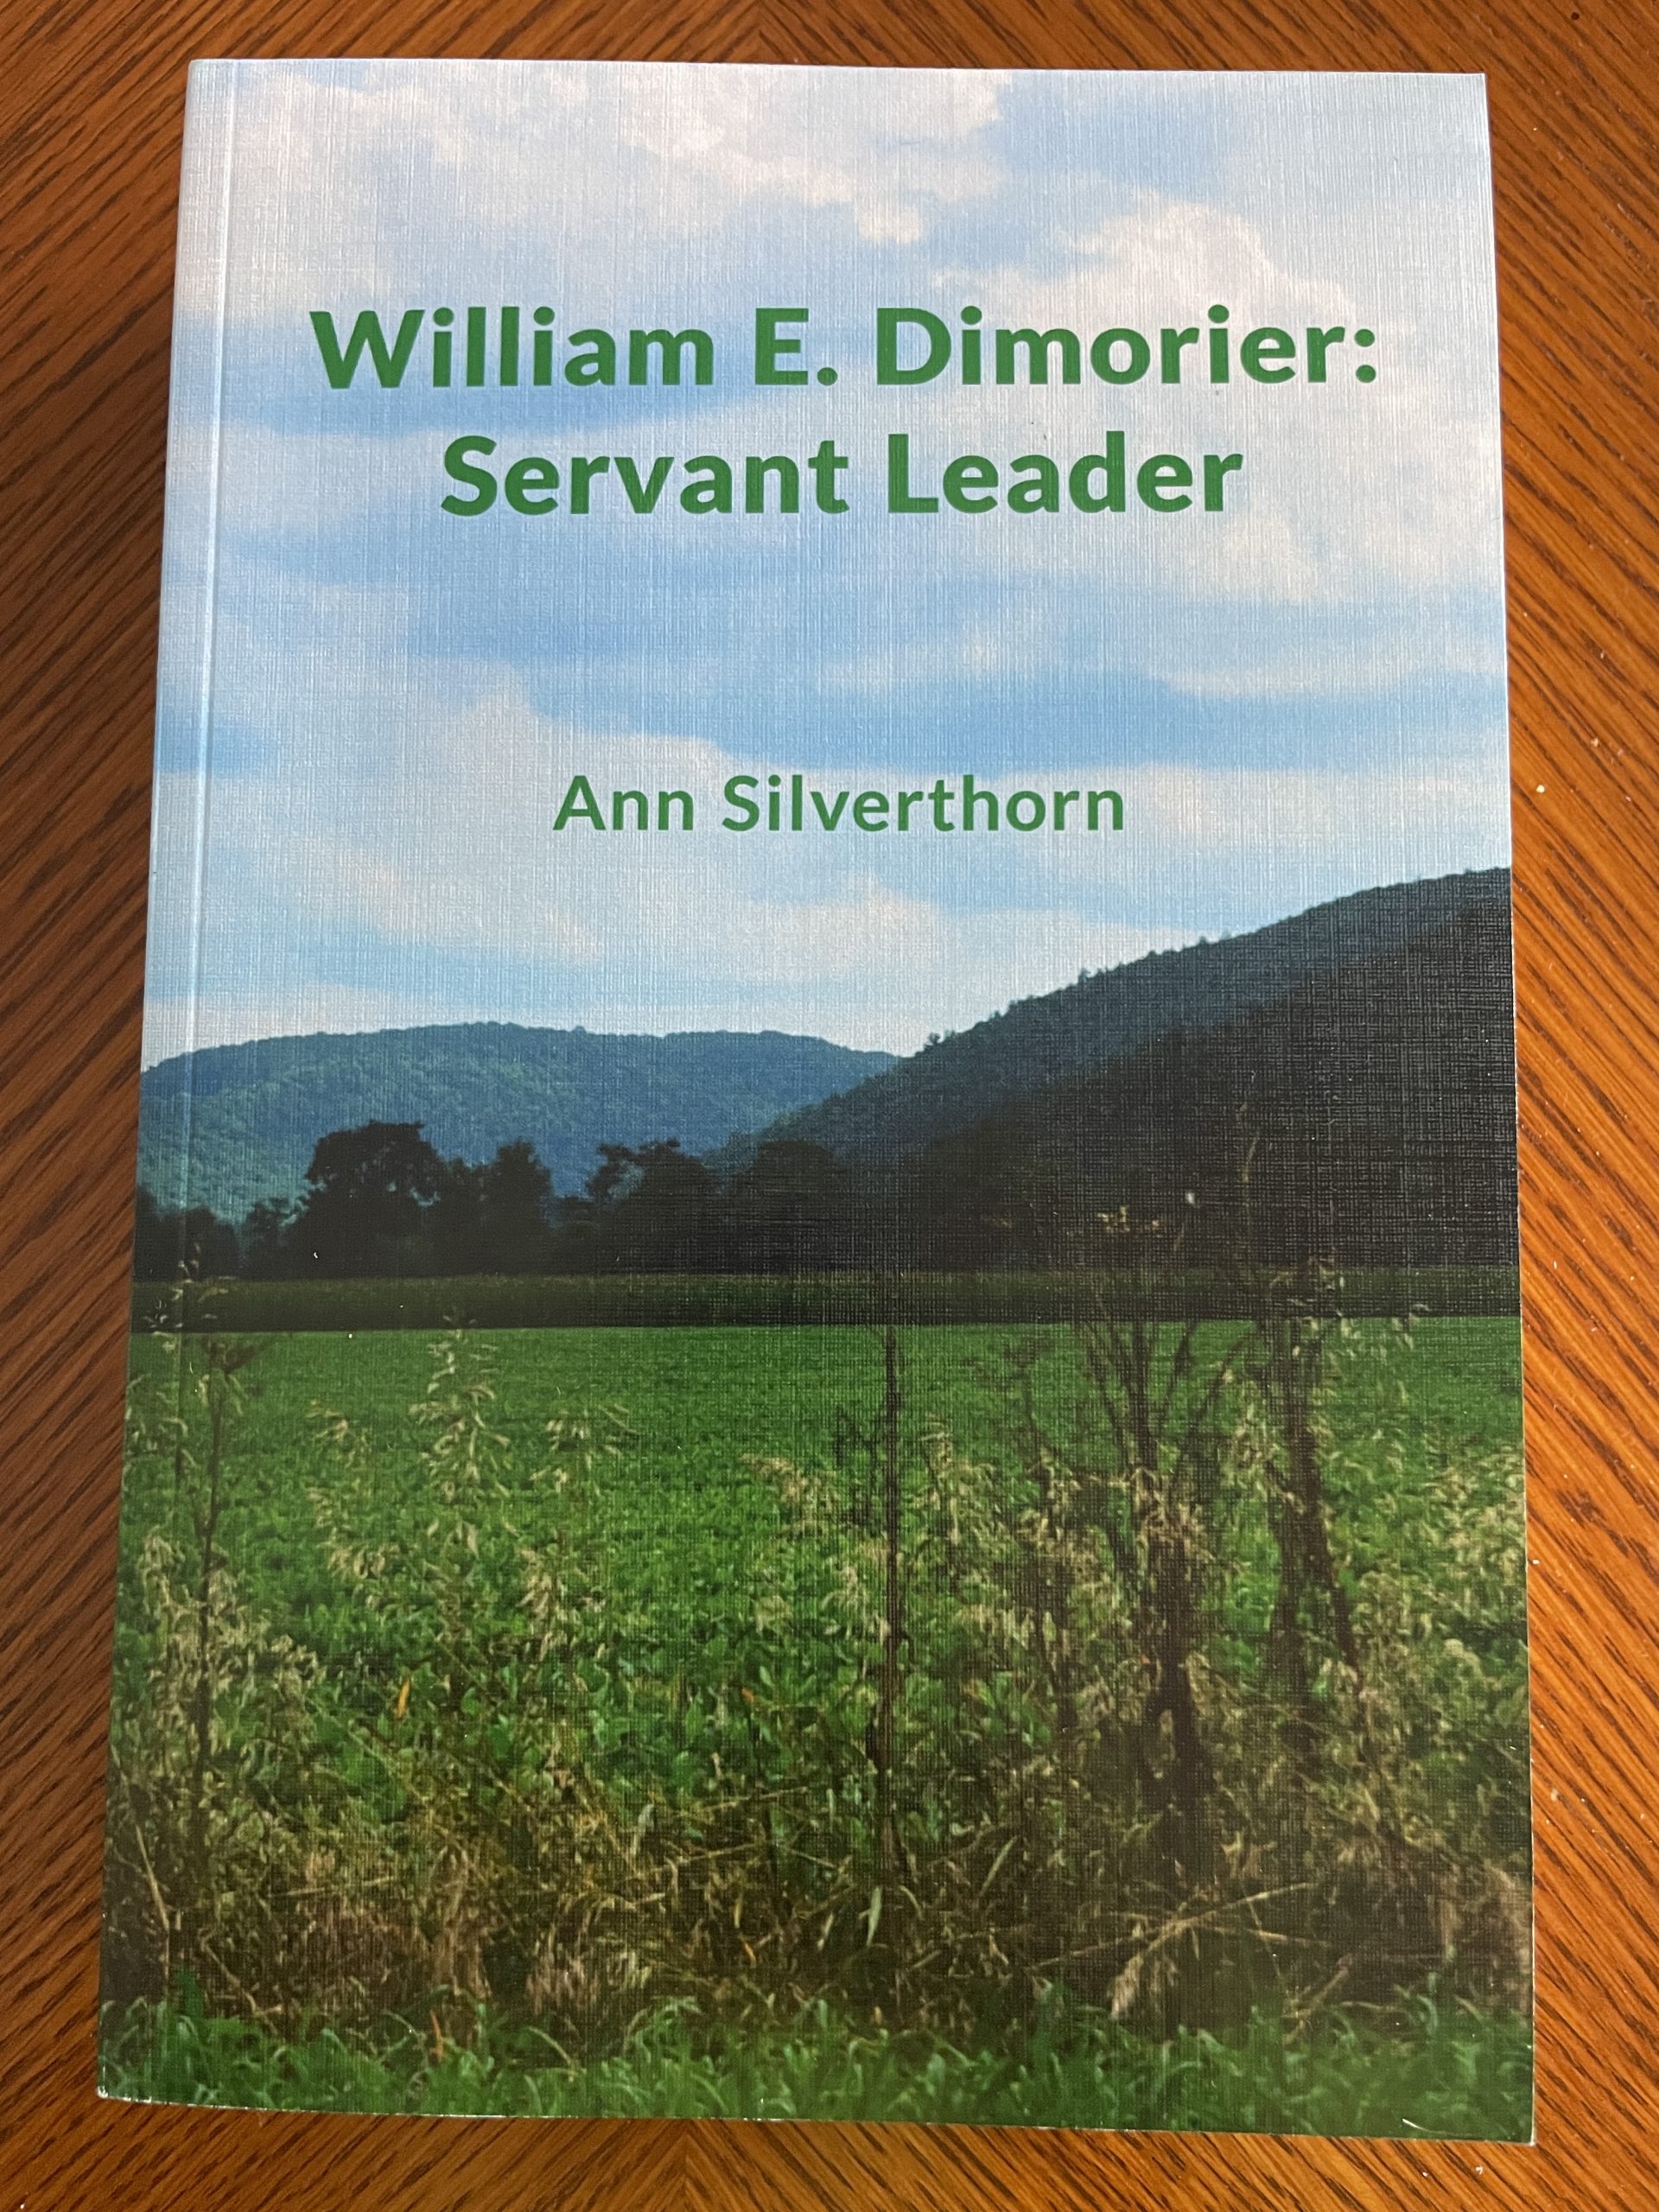 Index – William E. Dimorier: Servant Leader